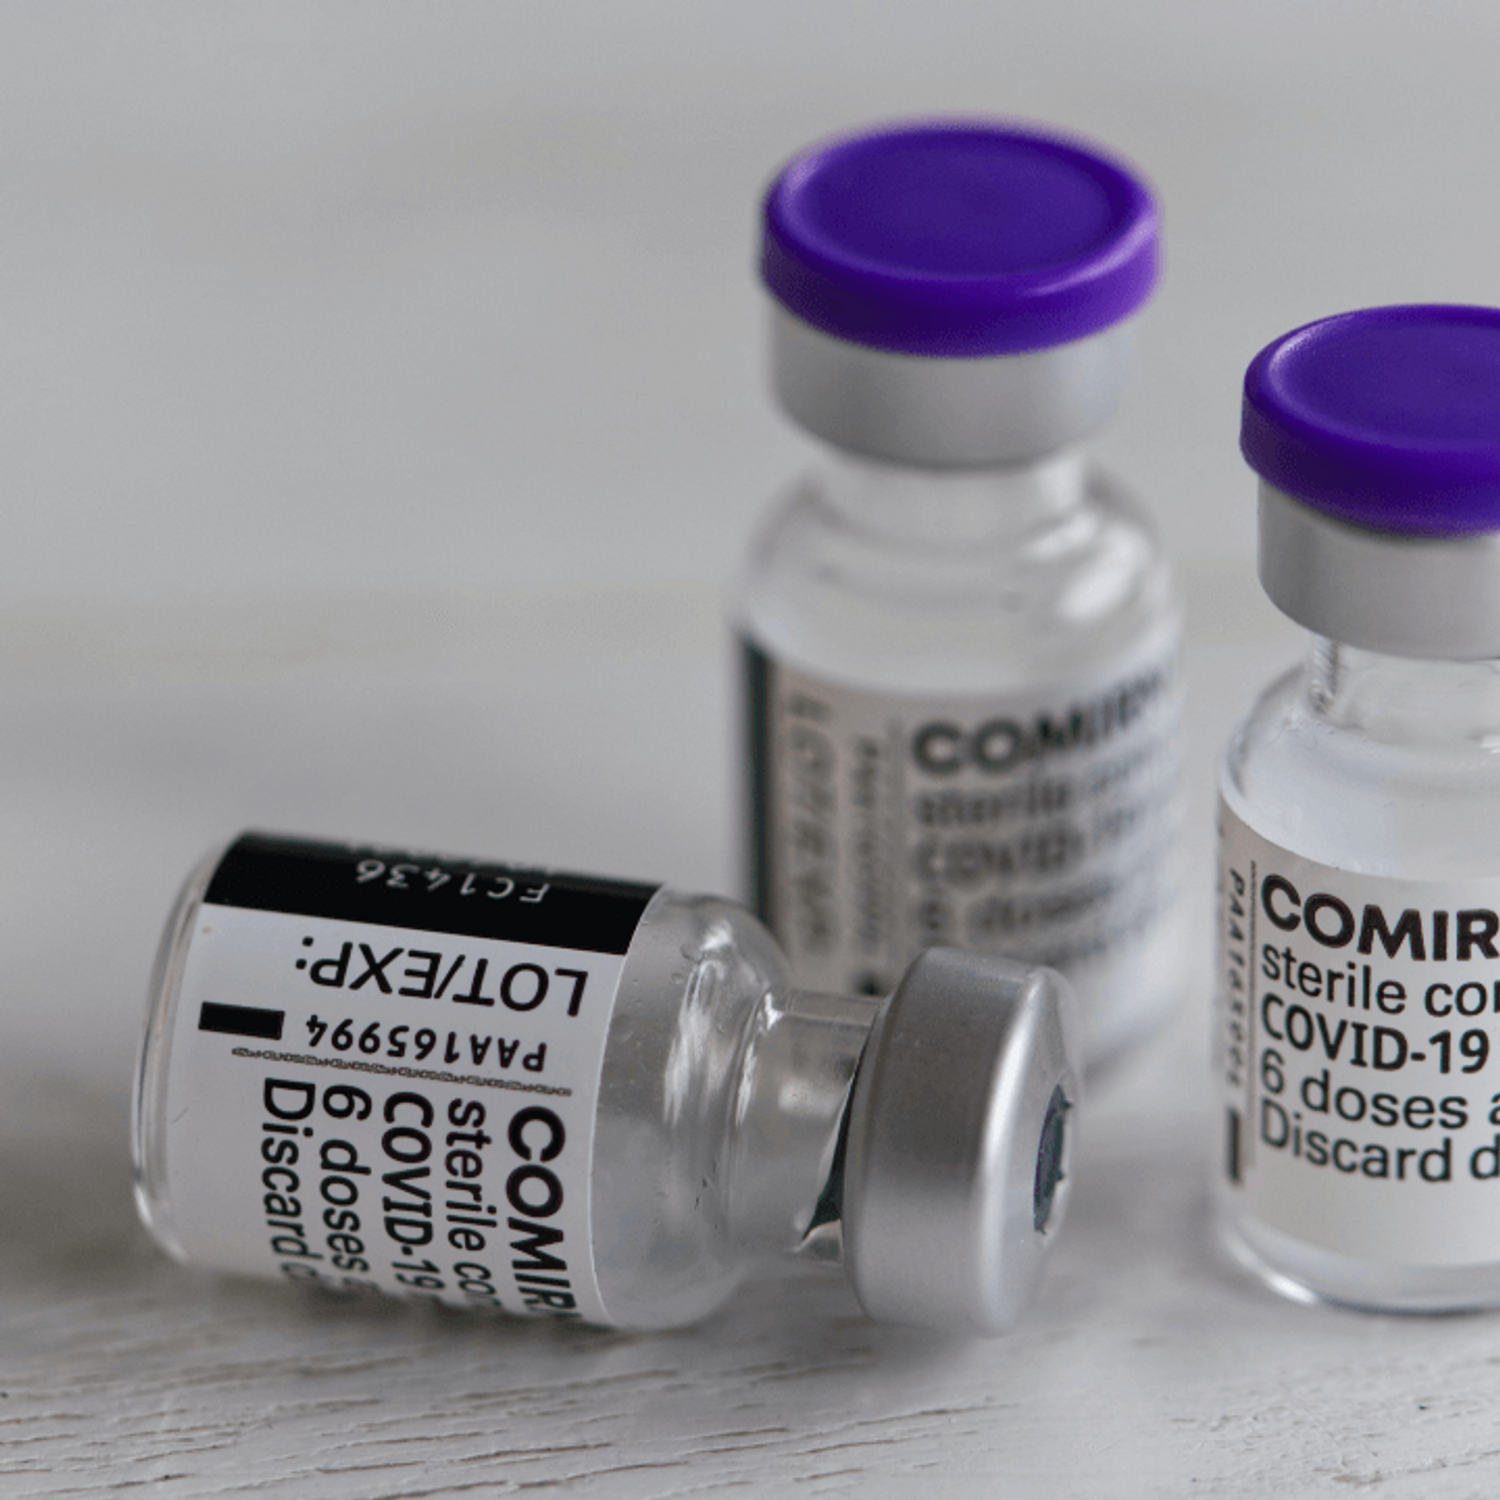 Pfizer-BioNTech débutent l'essai clinique d'un vaccin contre Omicron